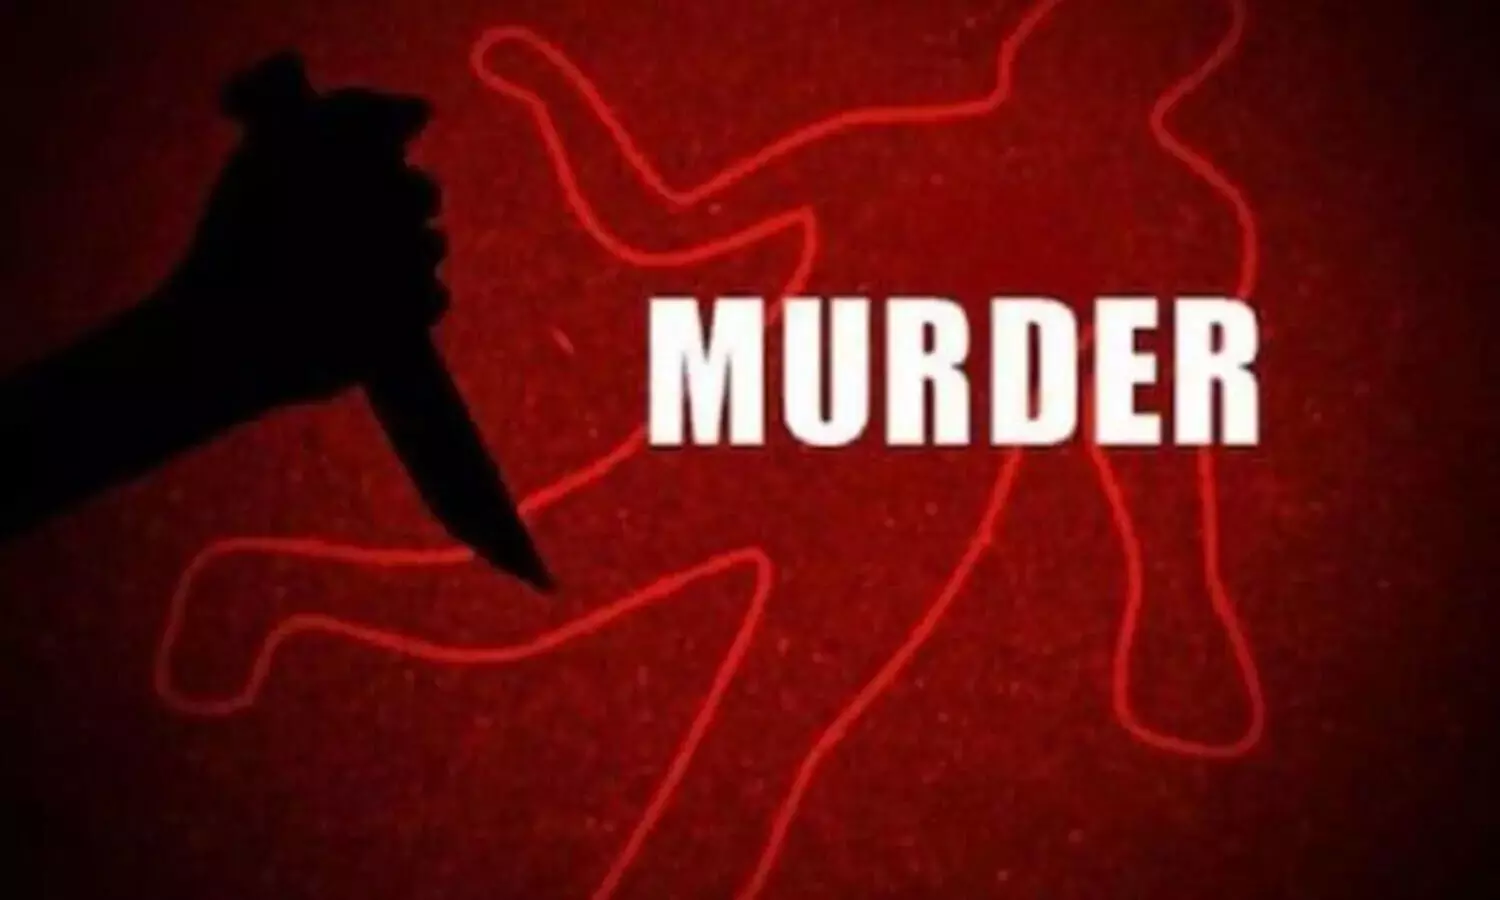 हैदराबाद: मुशीराबाद में एक व्यक्ति की हत्या